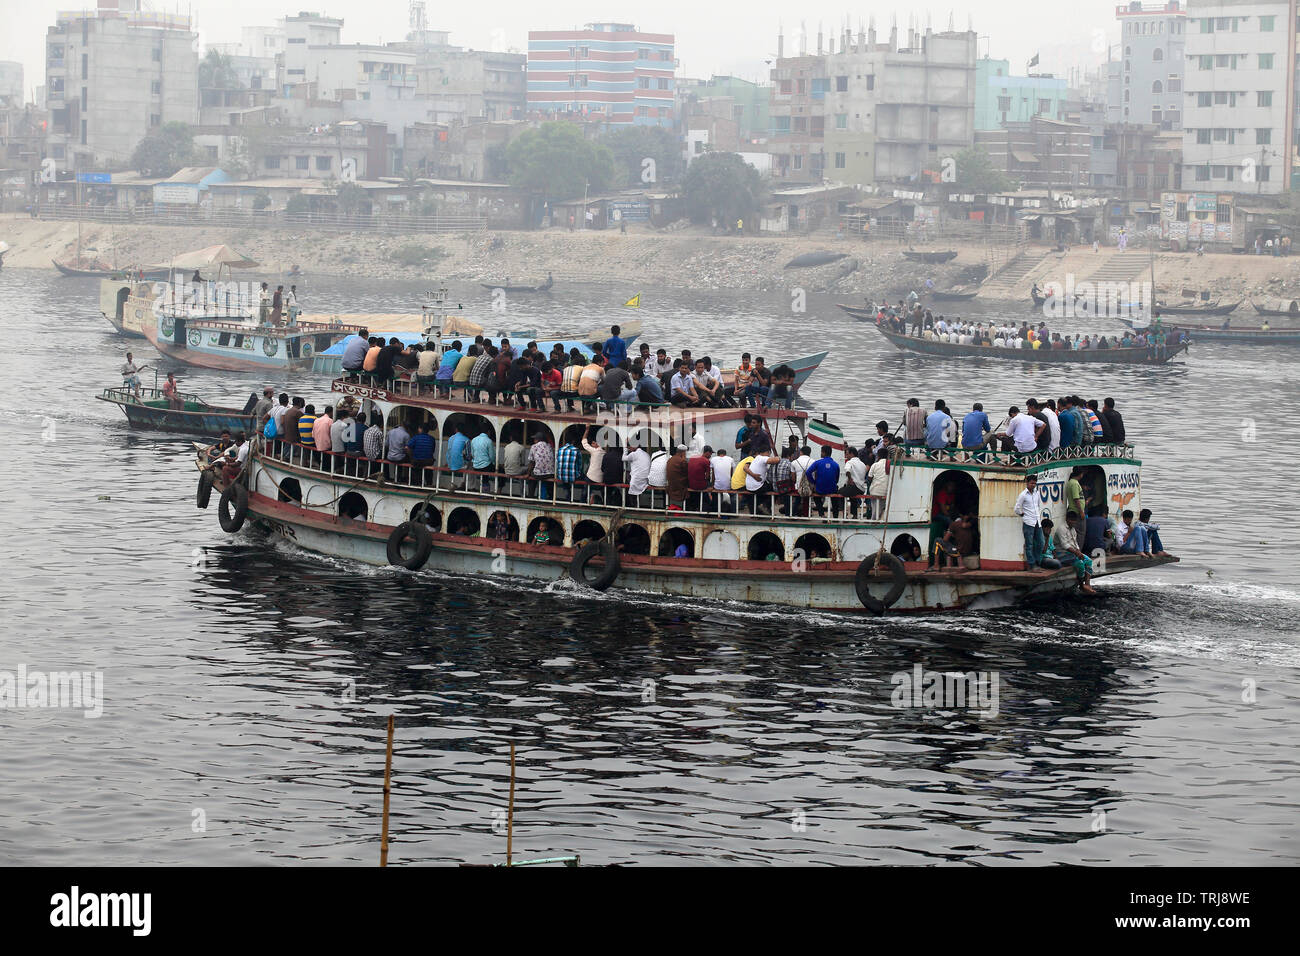 Les gens traversent les eaux polluées de l'visqueux de la rivière Buriganga chaque jour pour arriver à leur destination. Dhaka, Bangladesh. Banque D'Images